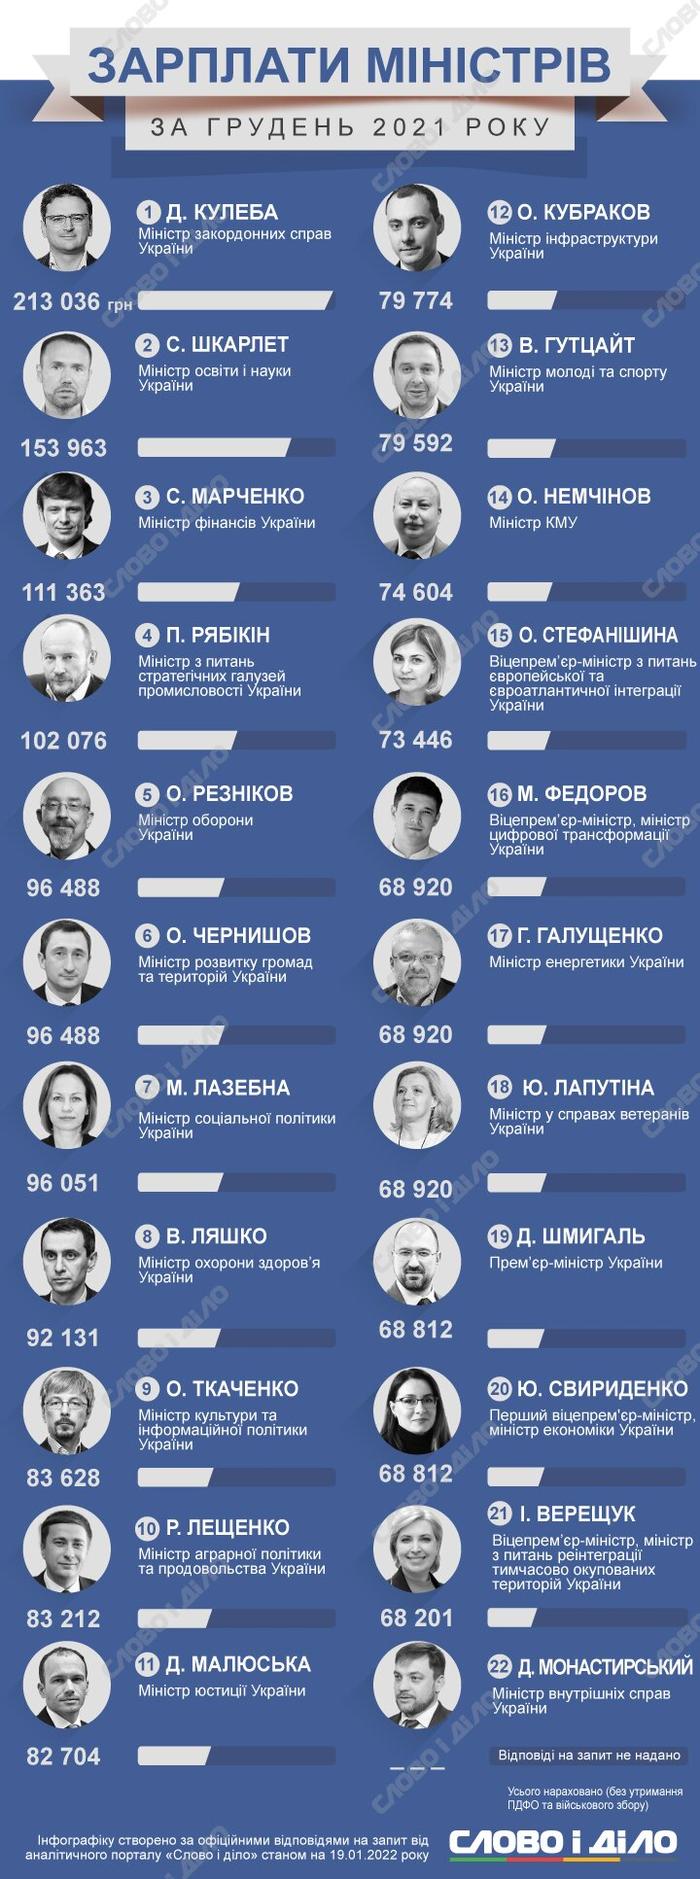 Заработок министров в Украине